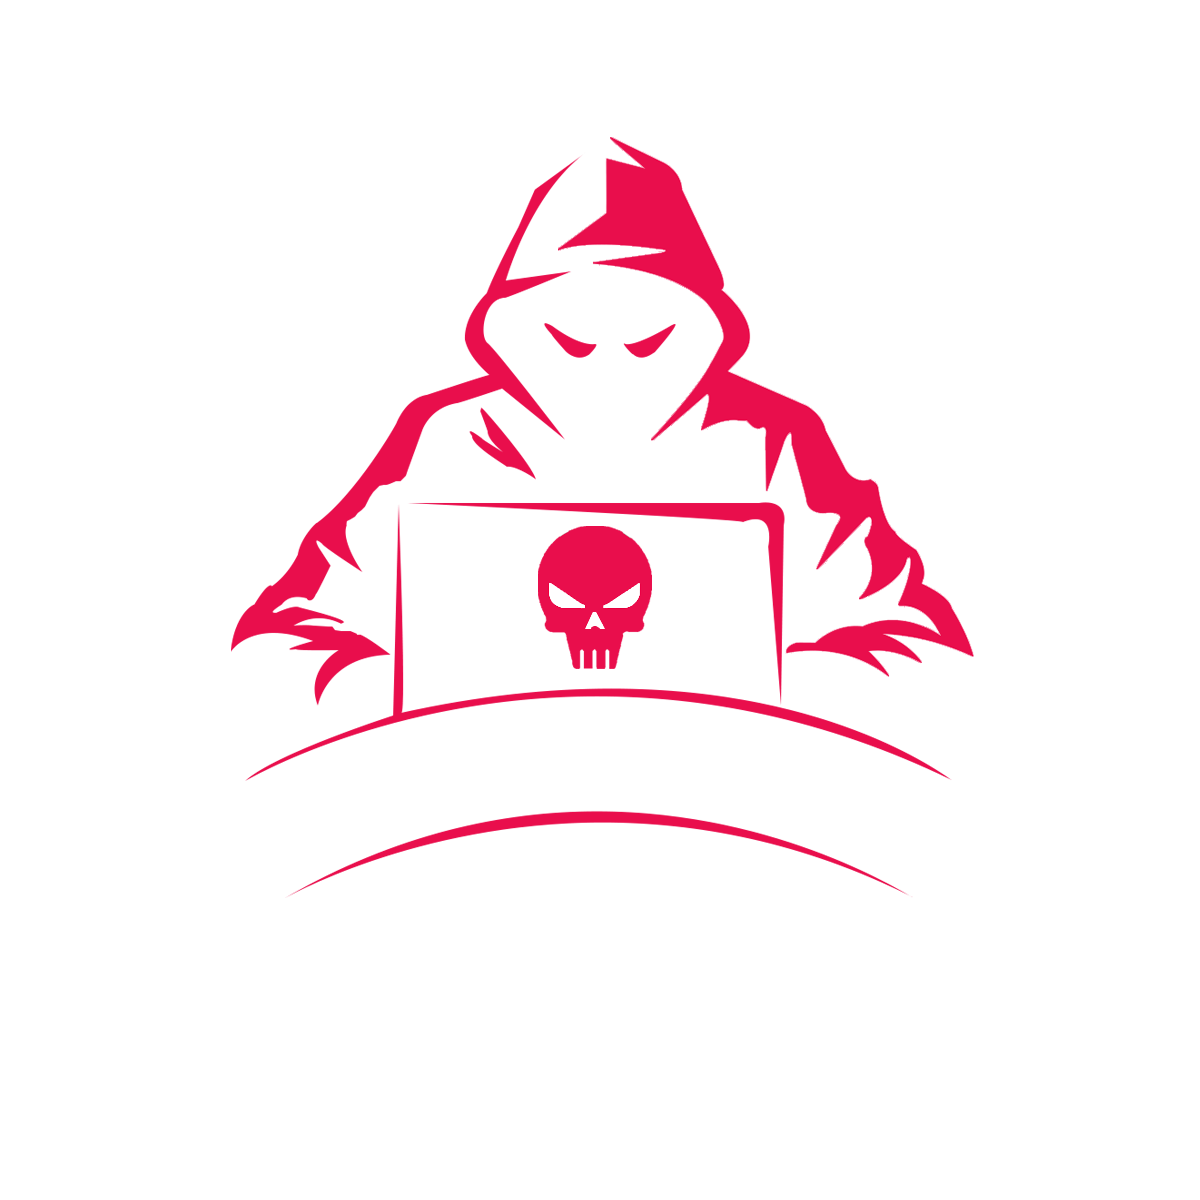 KnightCTF